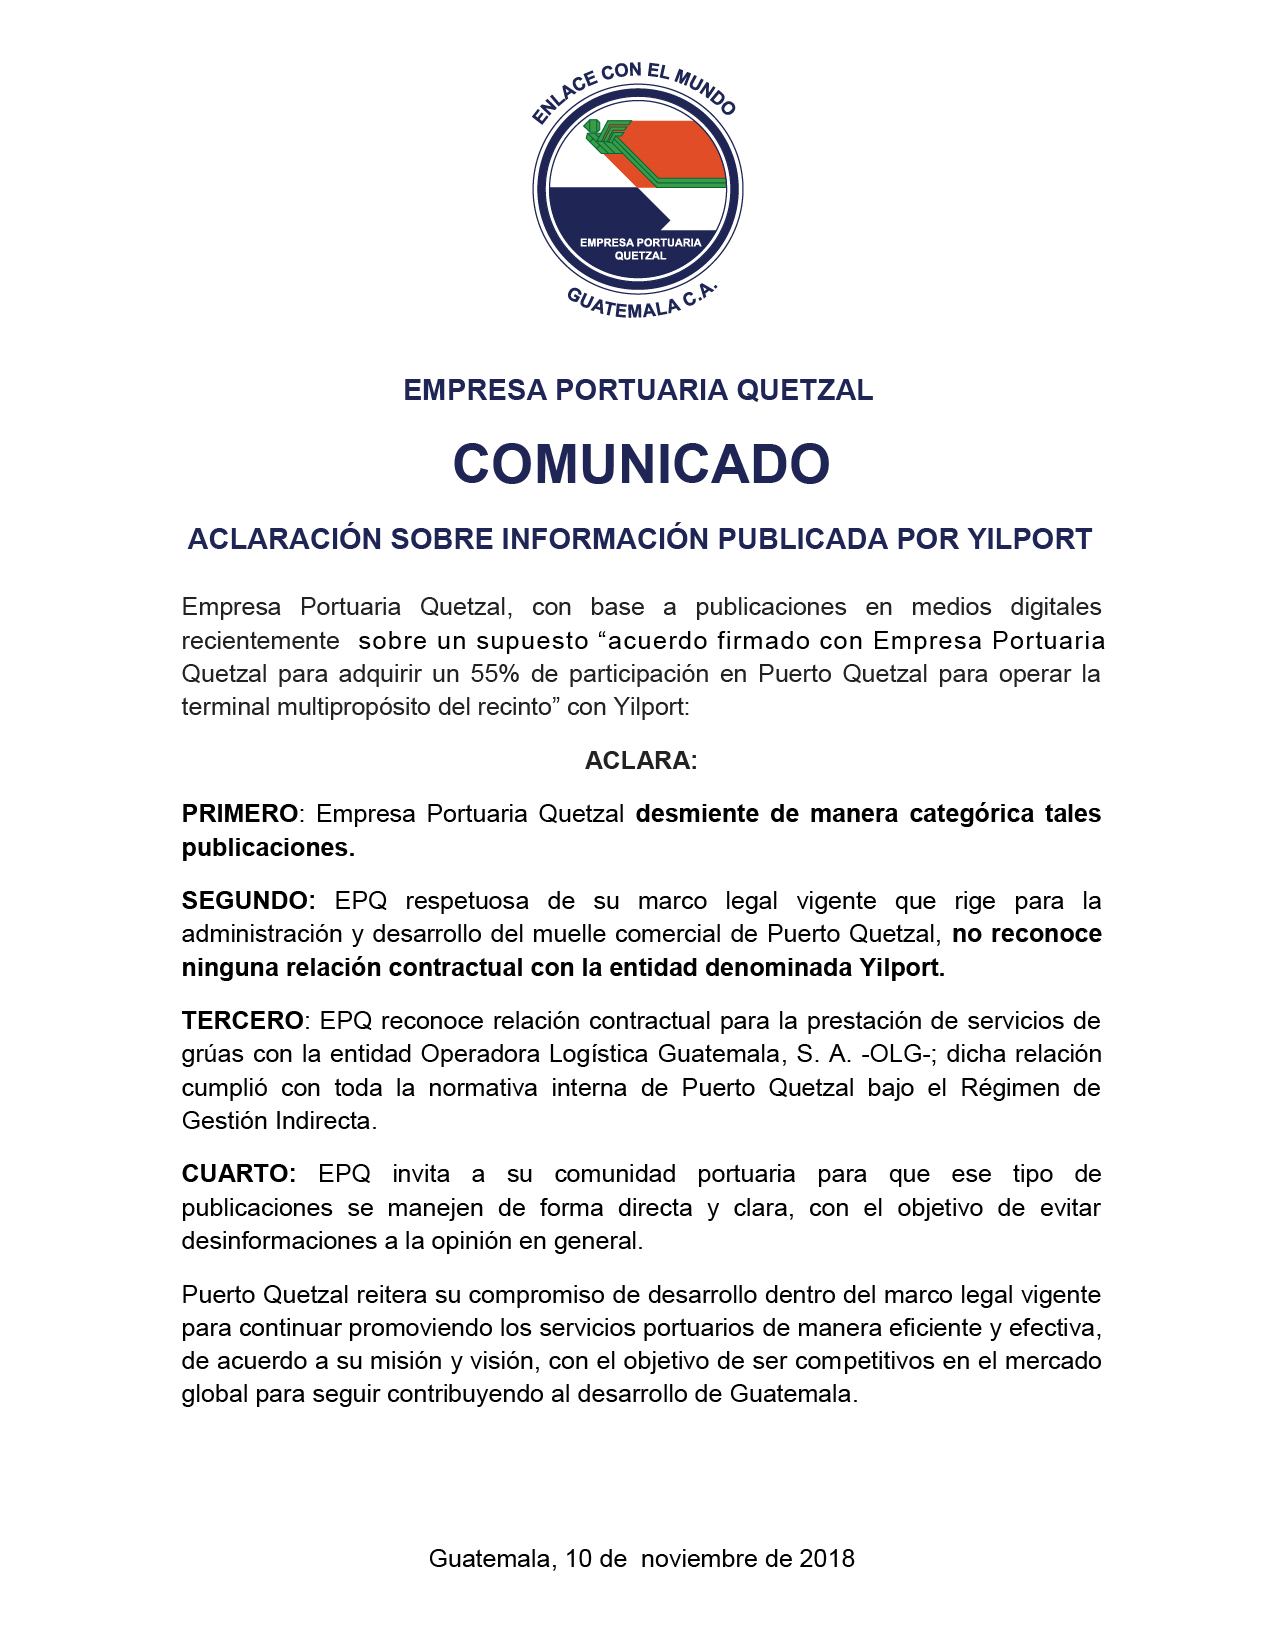 COMUNICADO URGENTE DE EPQ! Aclaración a la comunidad portuaria y opinión pública sobre publicación de Yilport.